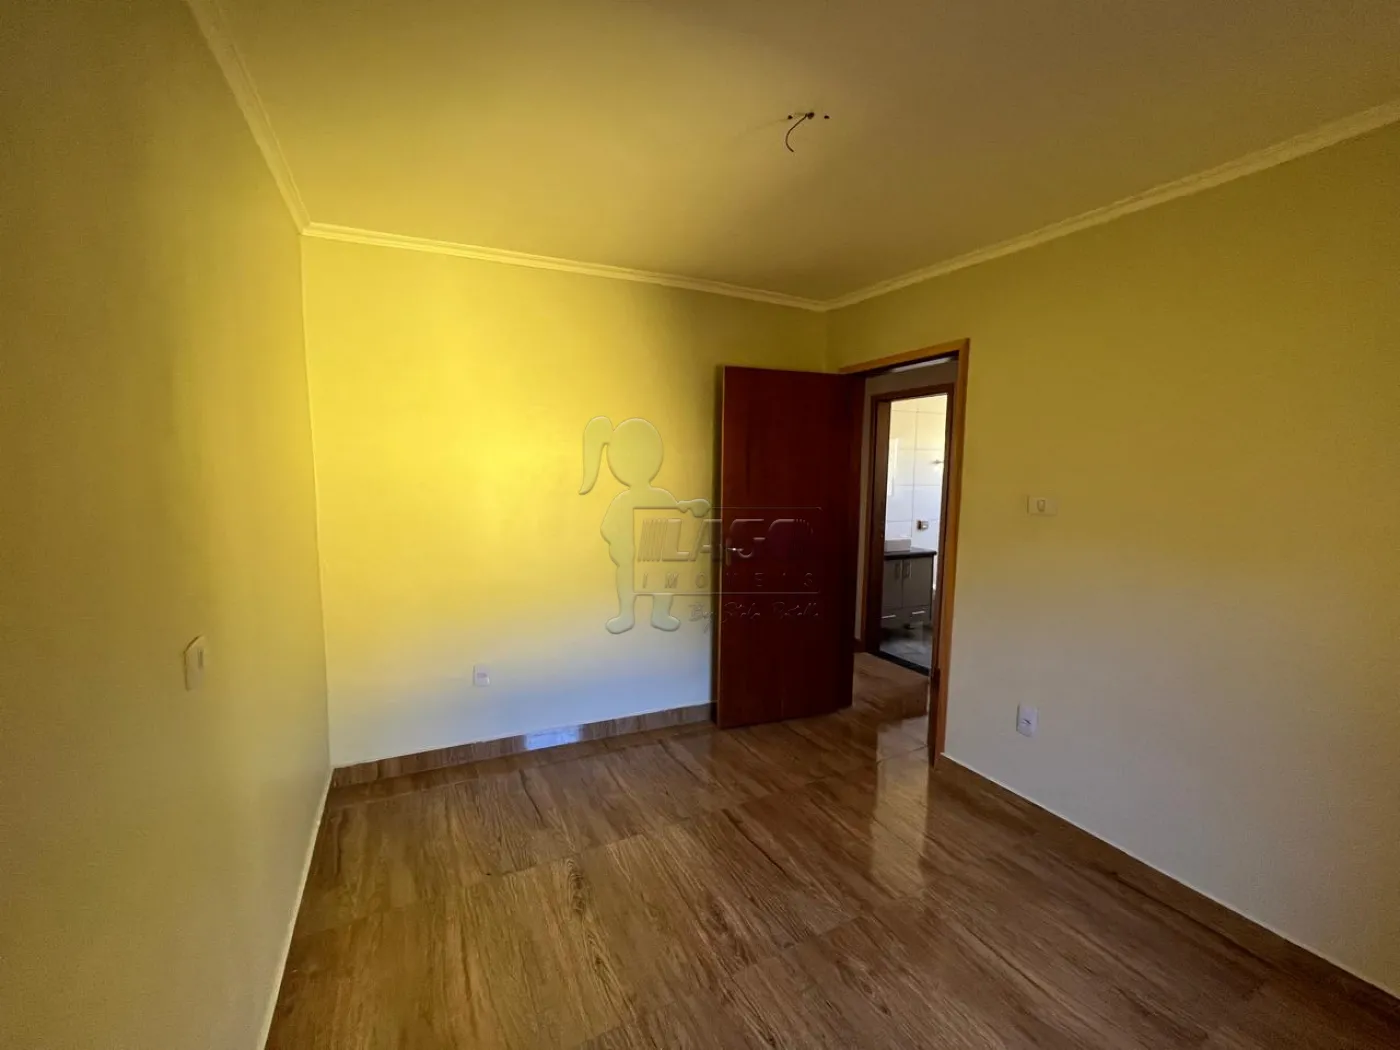 Comprar Casa / Padrão em Ribeirão Preto R$ 350.000,00 - Foto 2